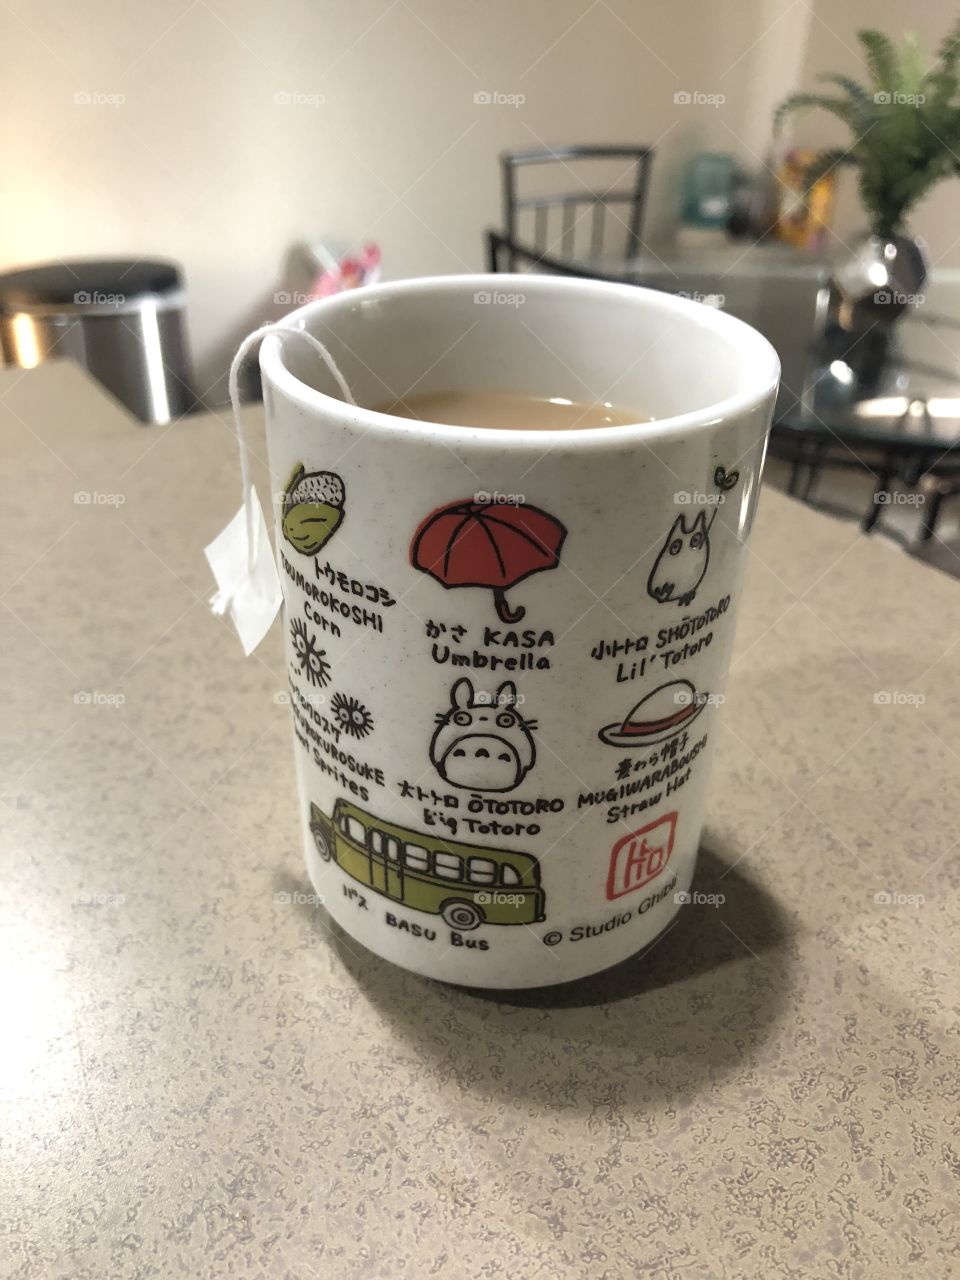 Ghibli tea time